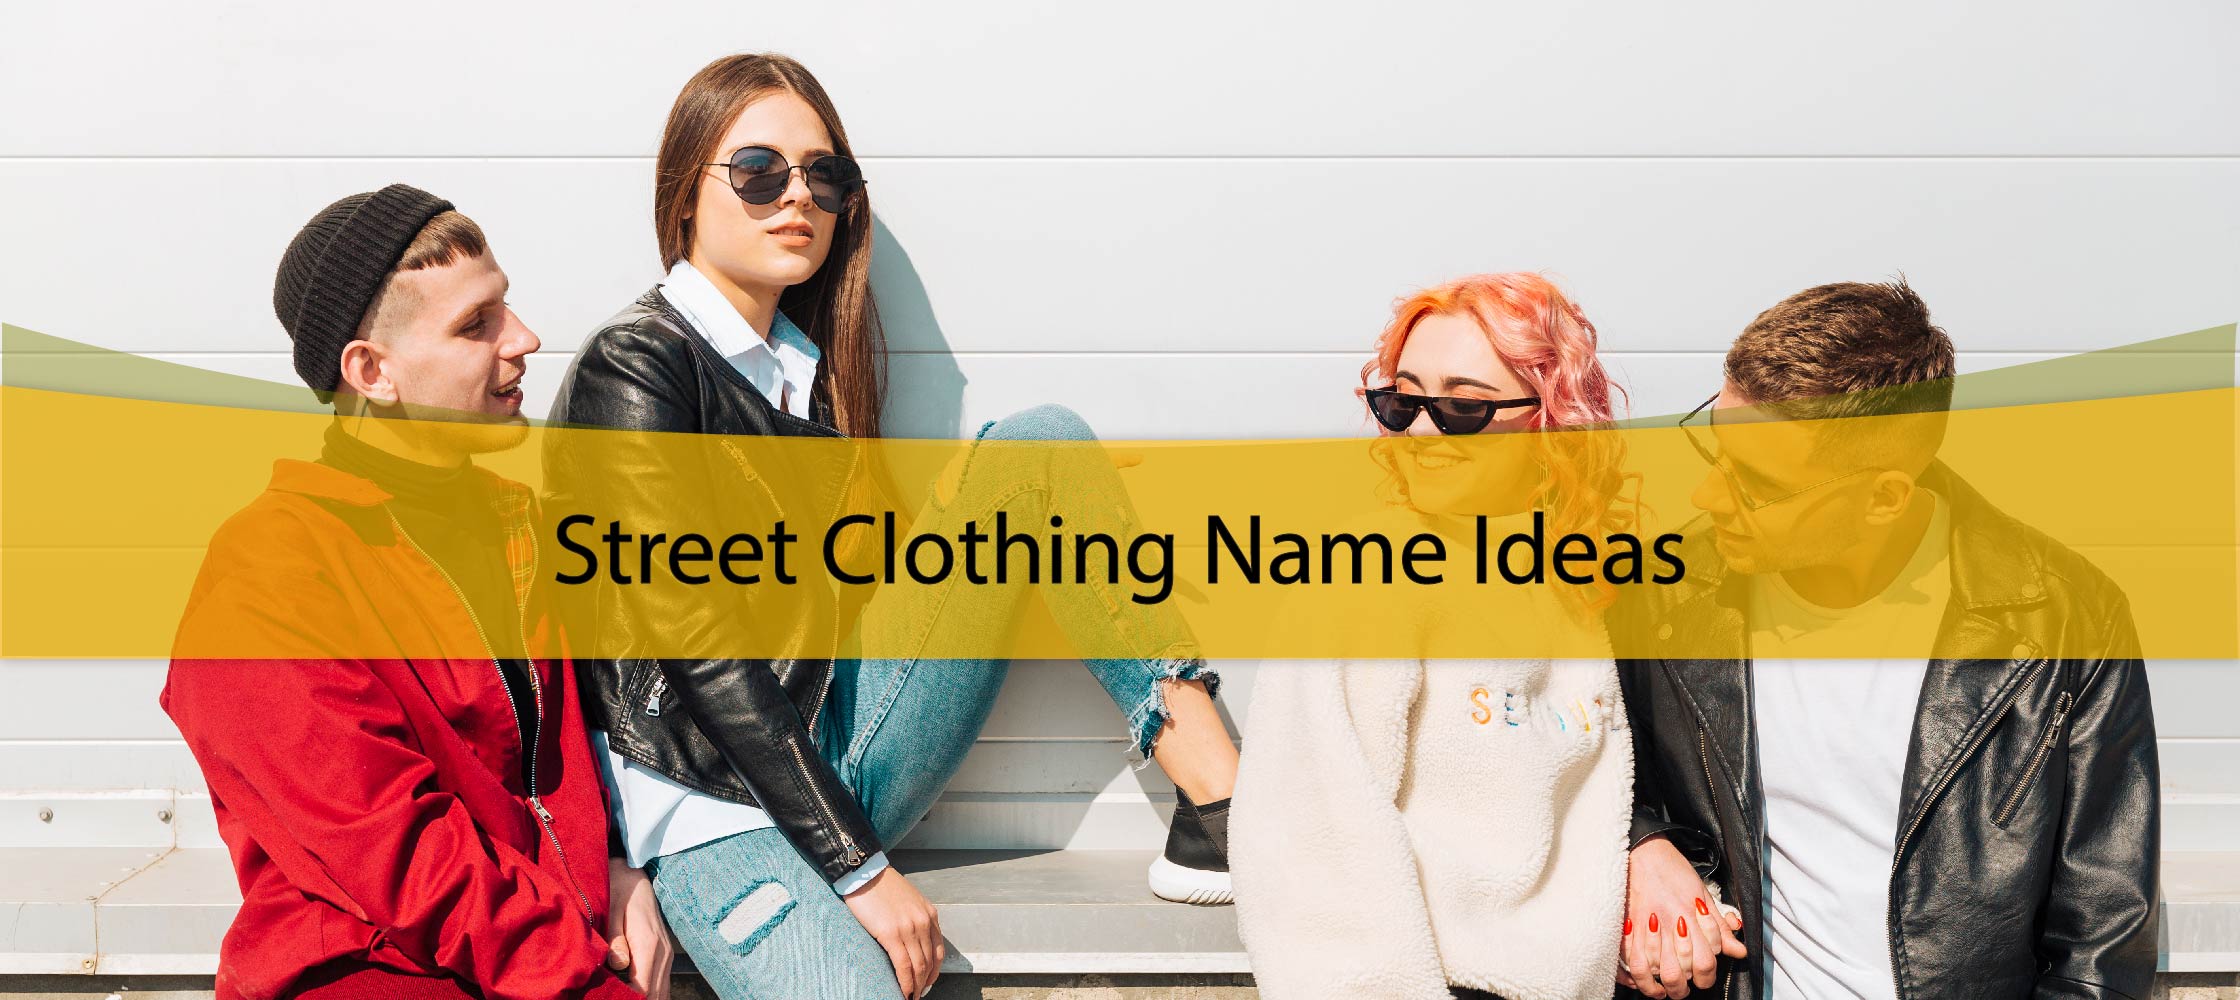 Street Clothing Name Ideas